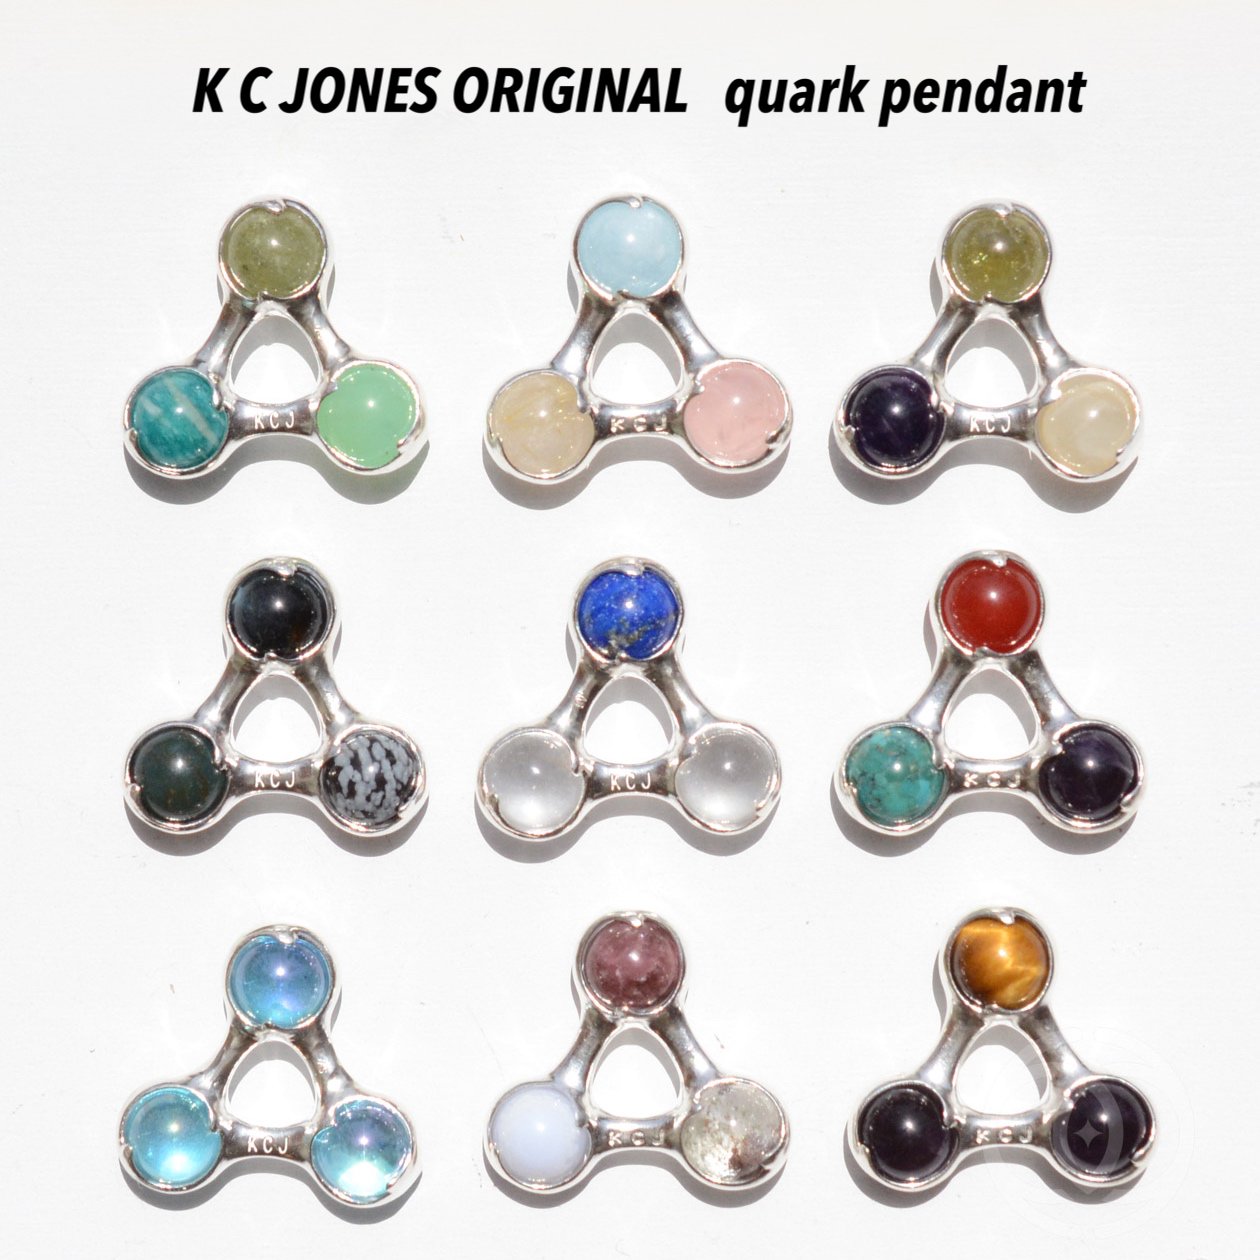 クォークペンダント　K C JONESオリジナル - フラワーオブライフ、メタトロンキューブ、神聖幾何学、ヘンプアイテムの K C  ジョーンズ・クリスタルショップです。